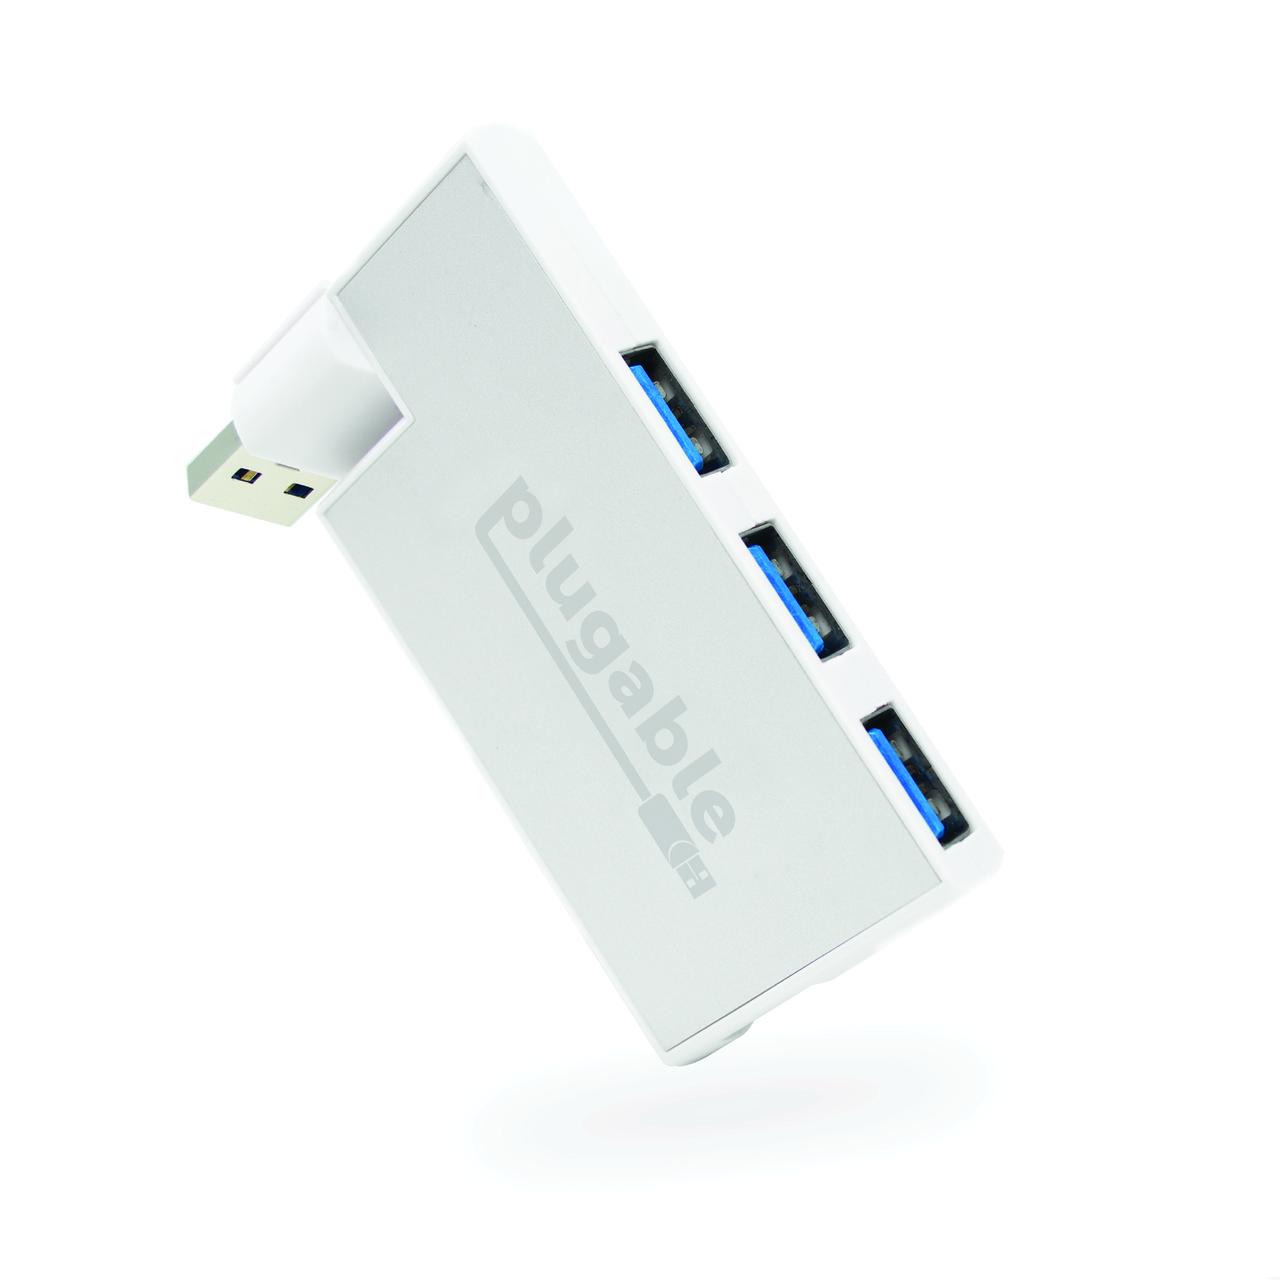 Plugable USB Hub, Rotating 4 Port USB 3.0 Hub, Powered USB Hub (Compatible with Windows, macOS & Linux, USB 2.0 Backwards Compatible) - image 1 of 7